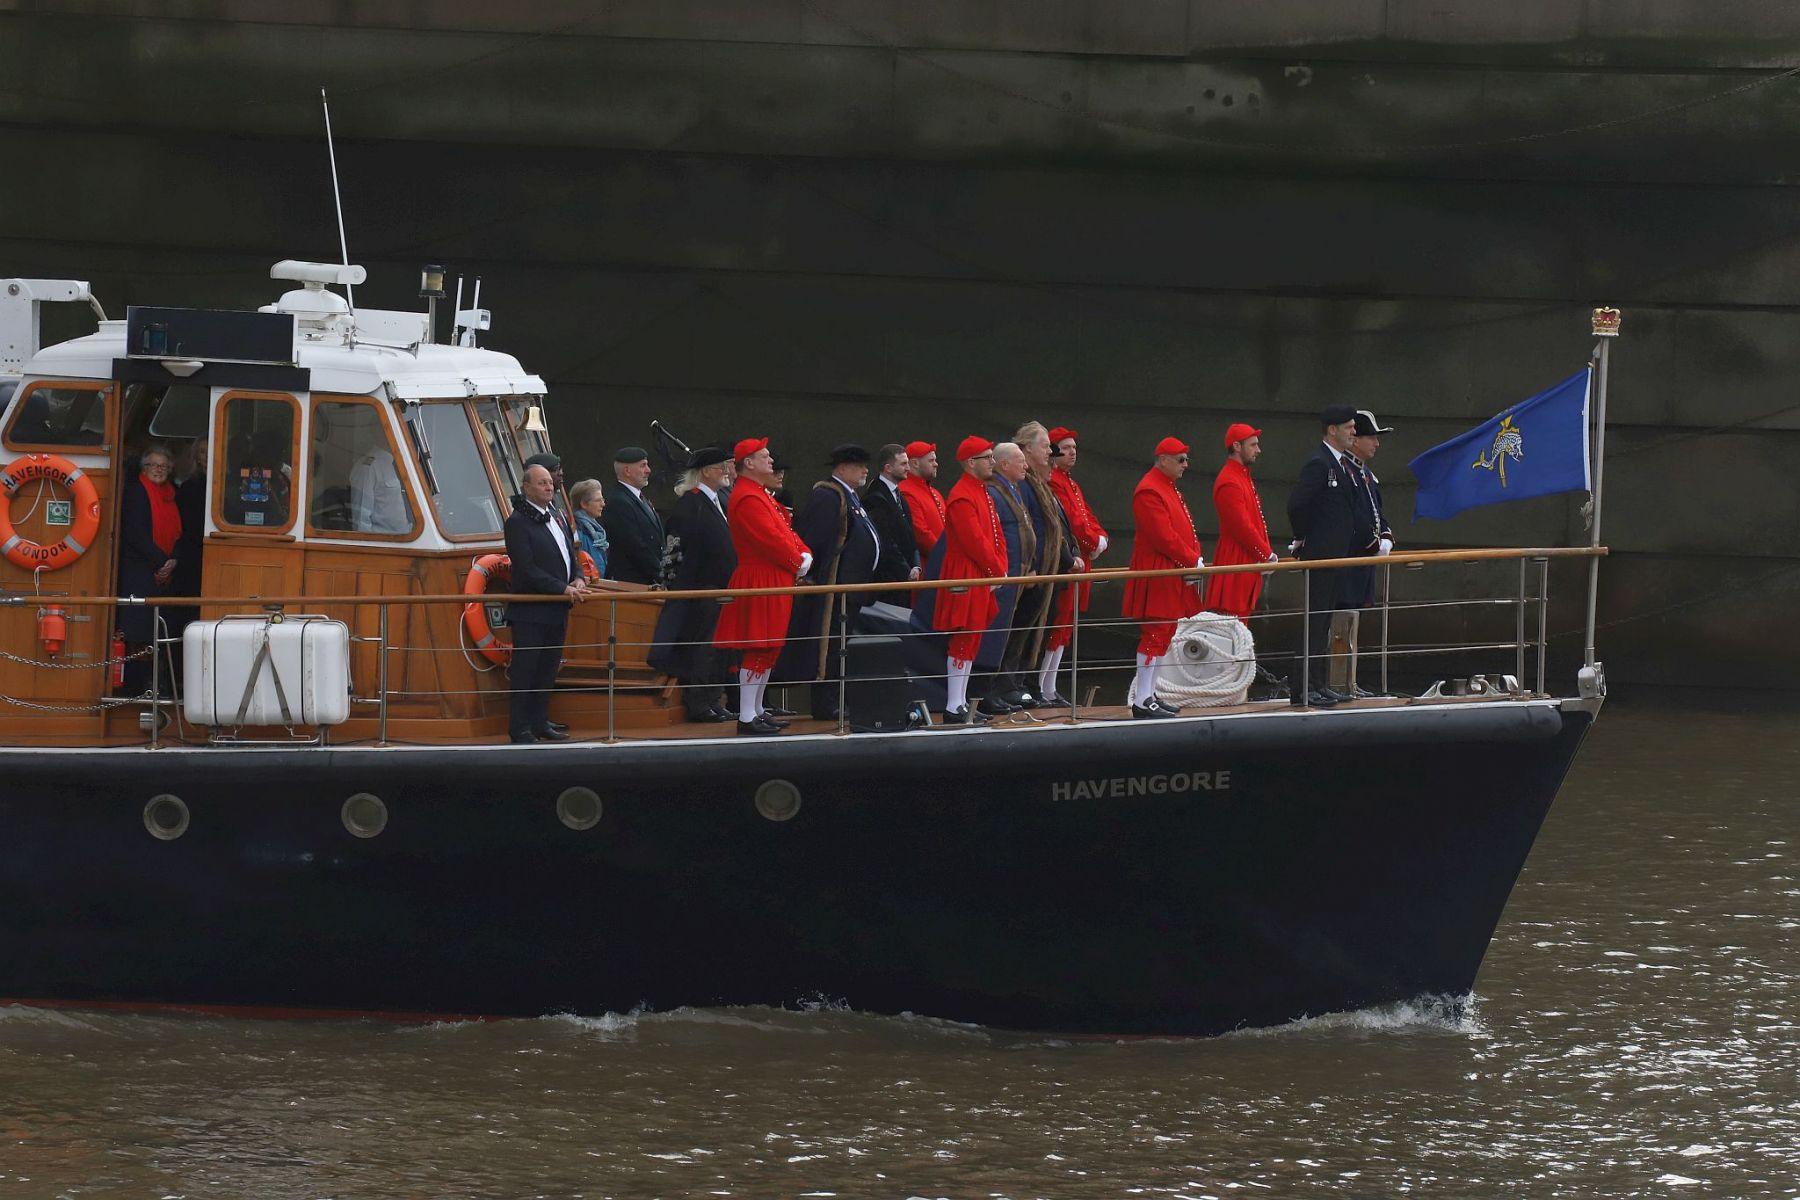 Havengore leading the 2022 River Thames Armistice Day flotilla